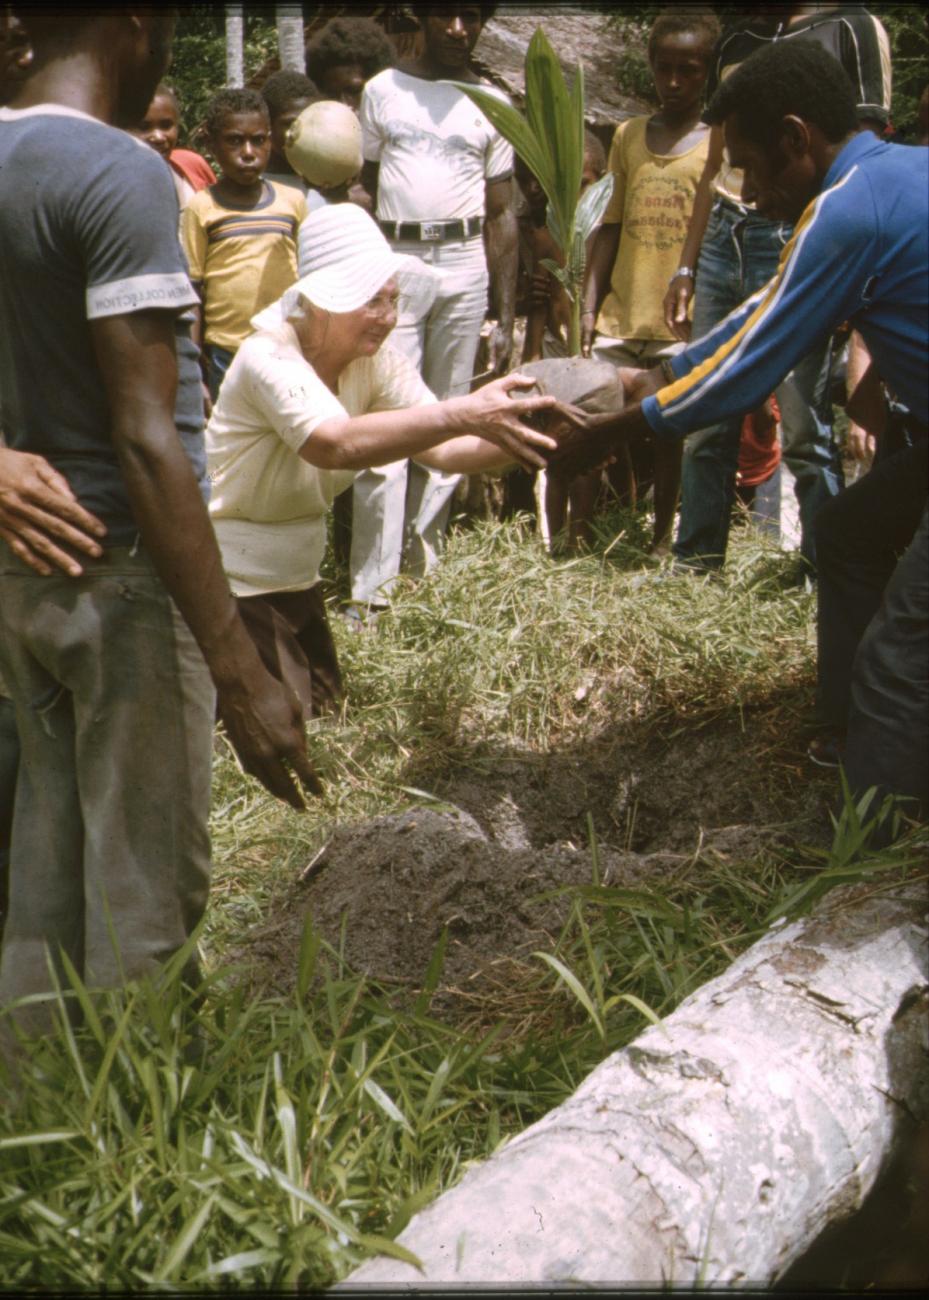 BD/309/338 - 
Mevrouw Marcus plant een nieuwe kokospalm in het dorp Konda
